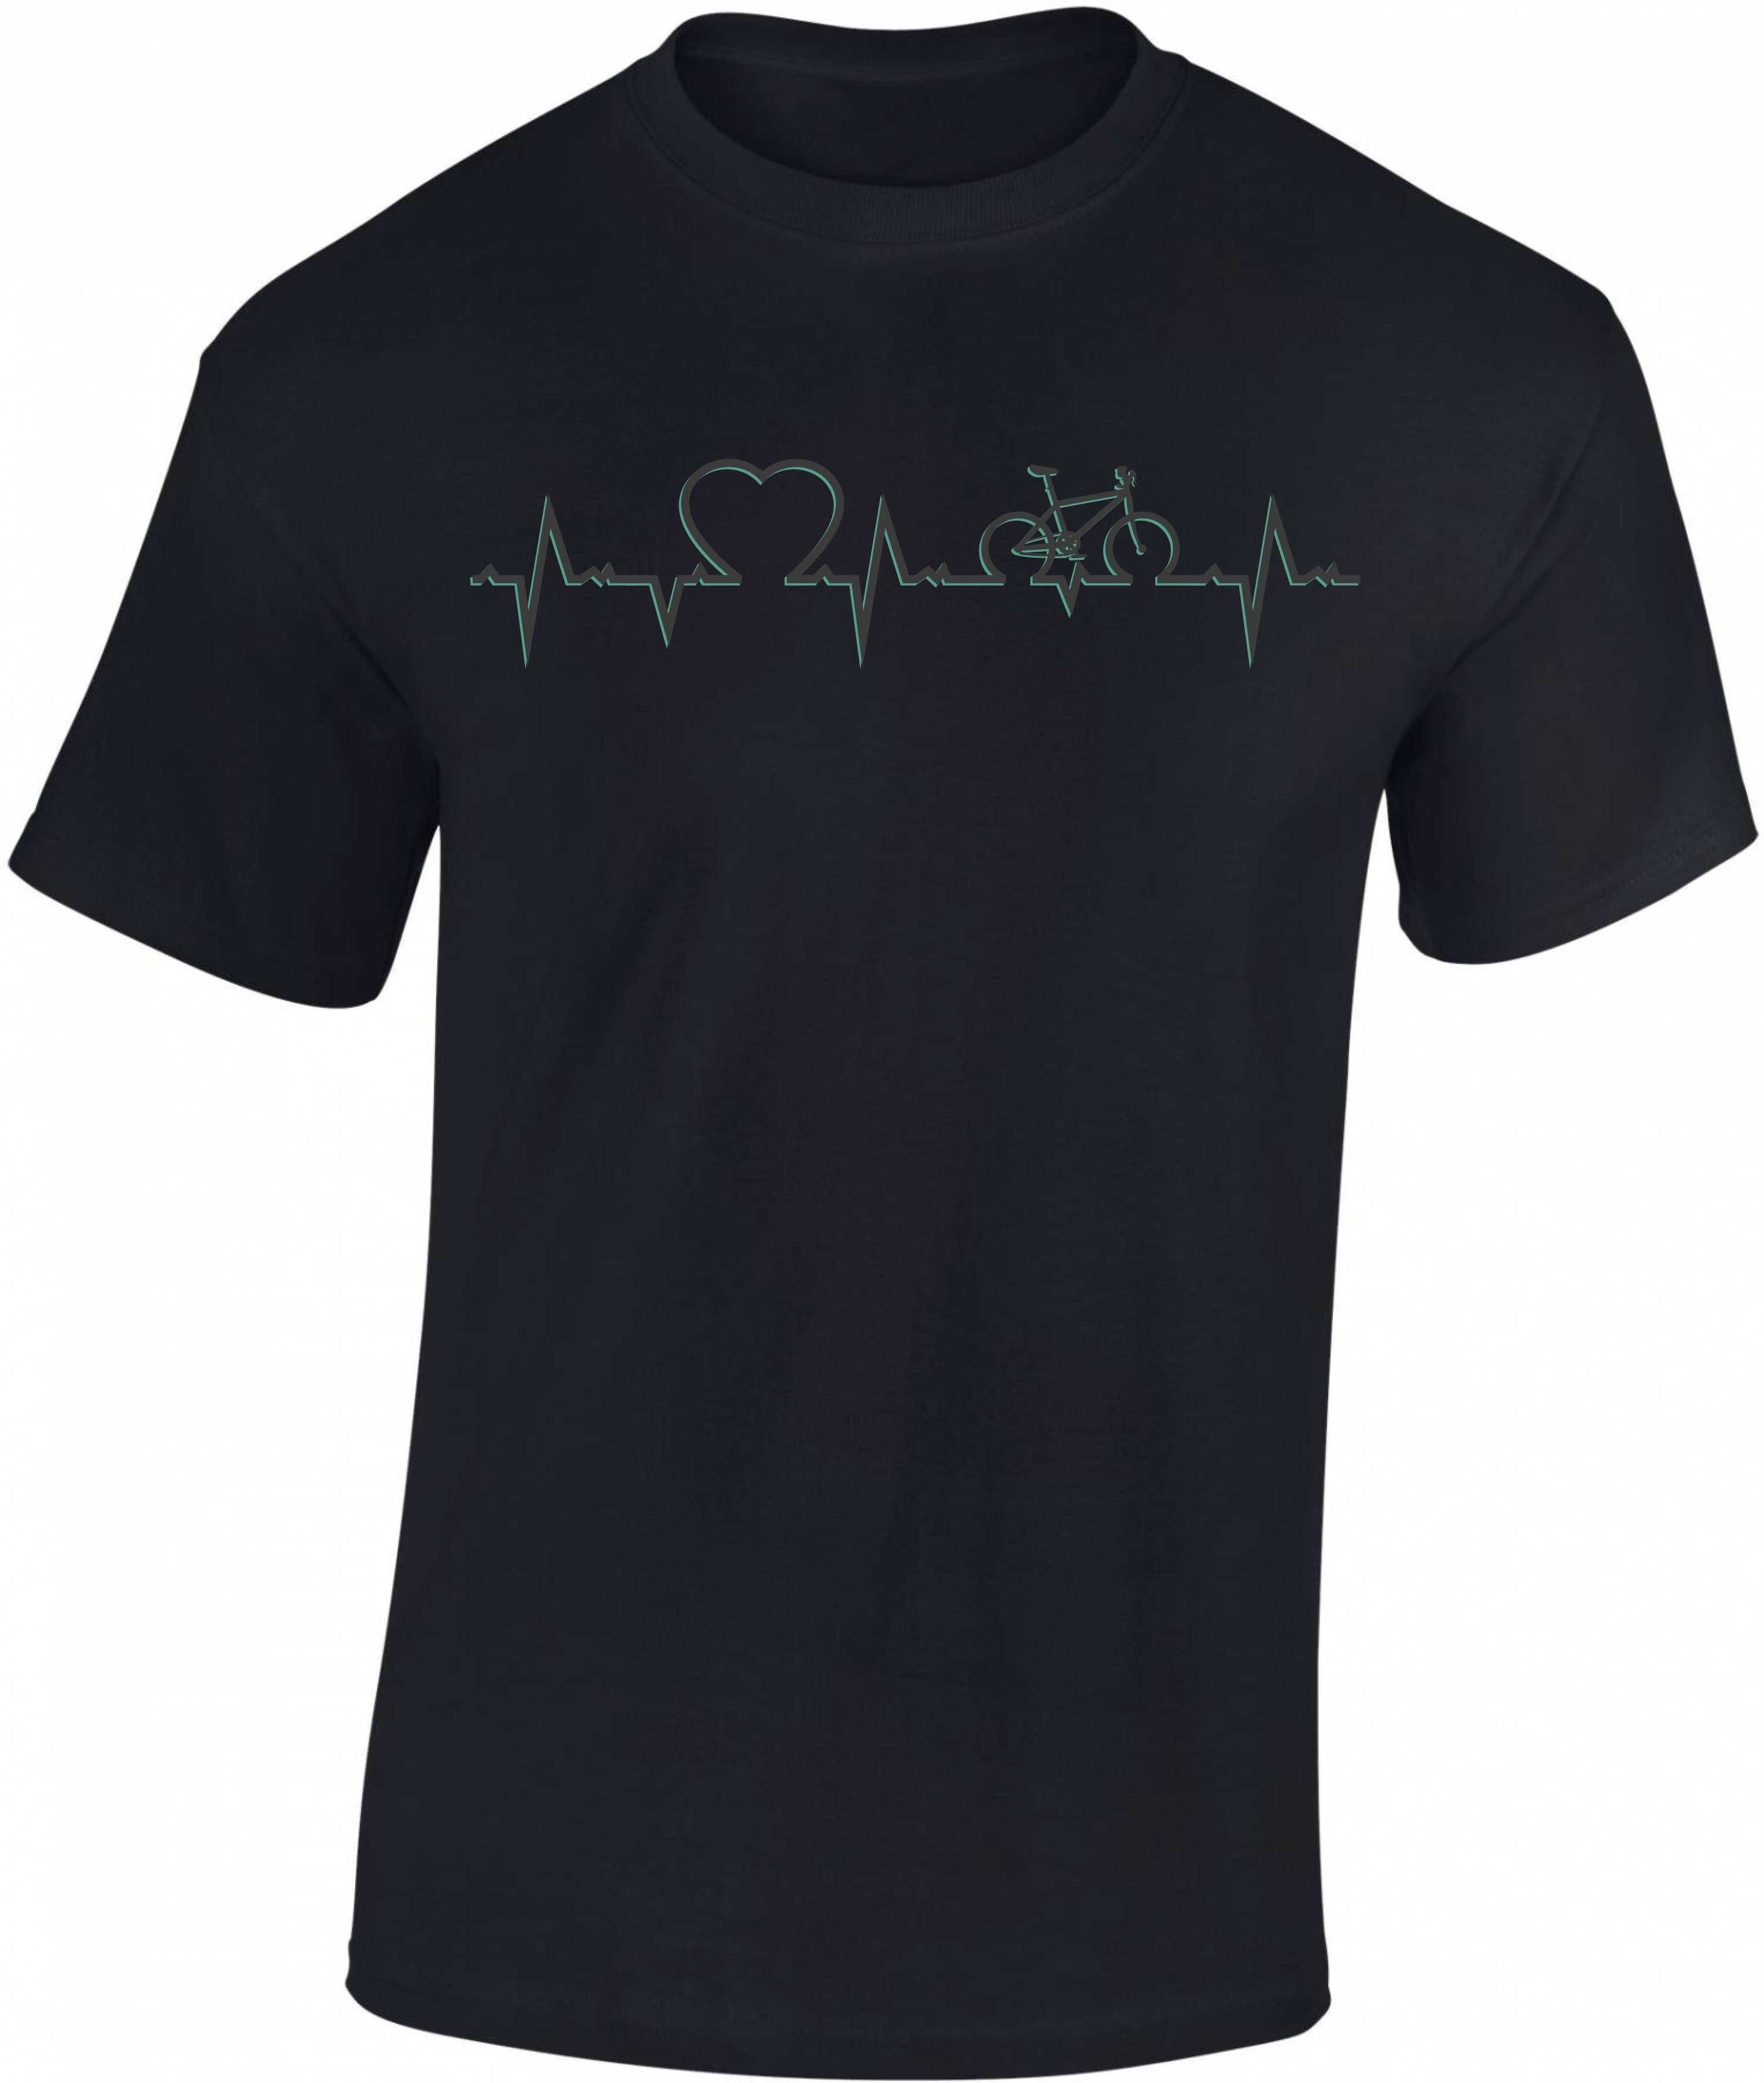 Baddery Print-Shirt Fahrrad T-Shirt : Heartbeat Bike - Sport Tshirts Herren, hochwertiger Siebdruck, auch Übergrößen, aus Baumwolle